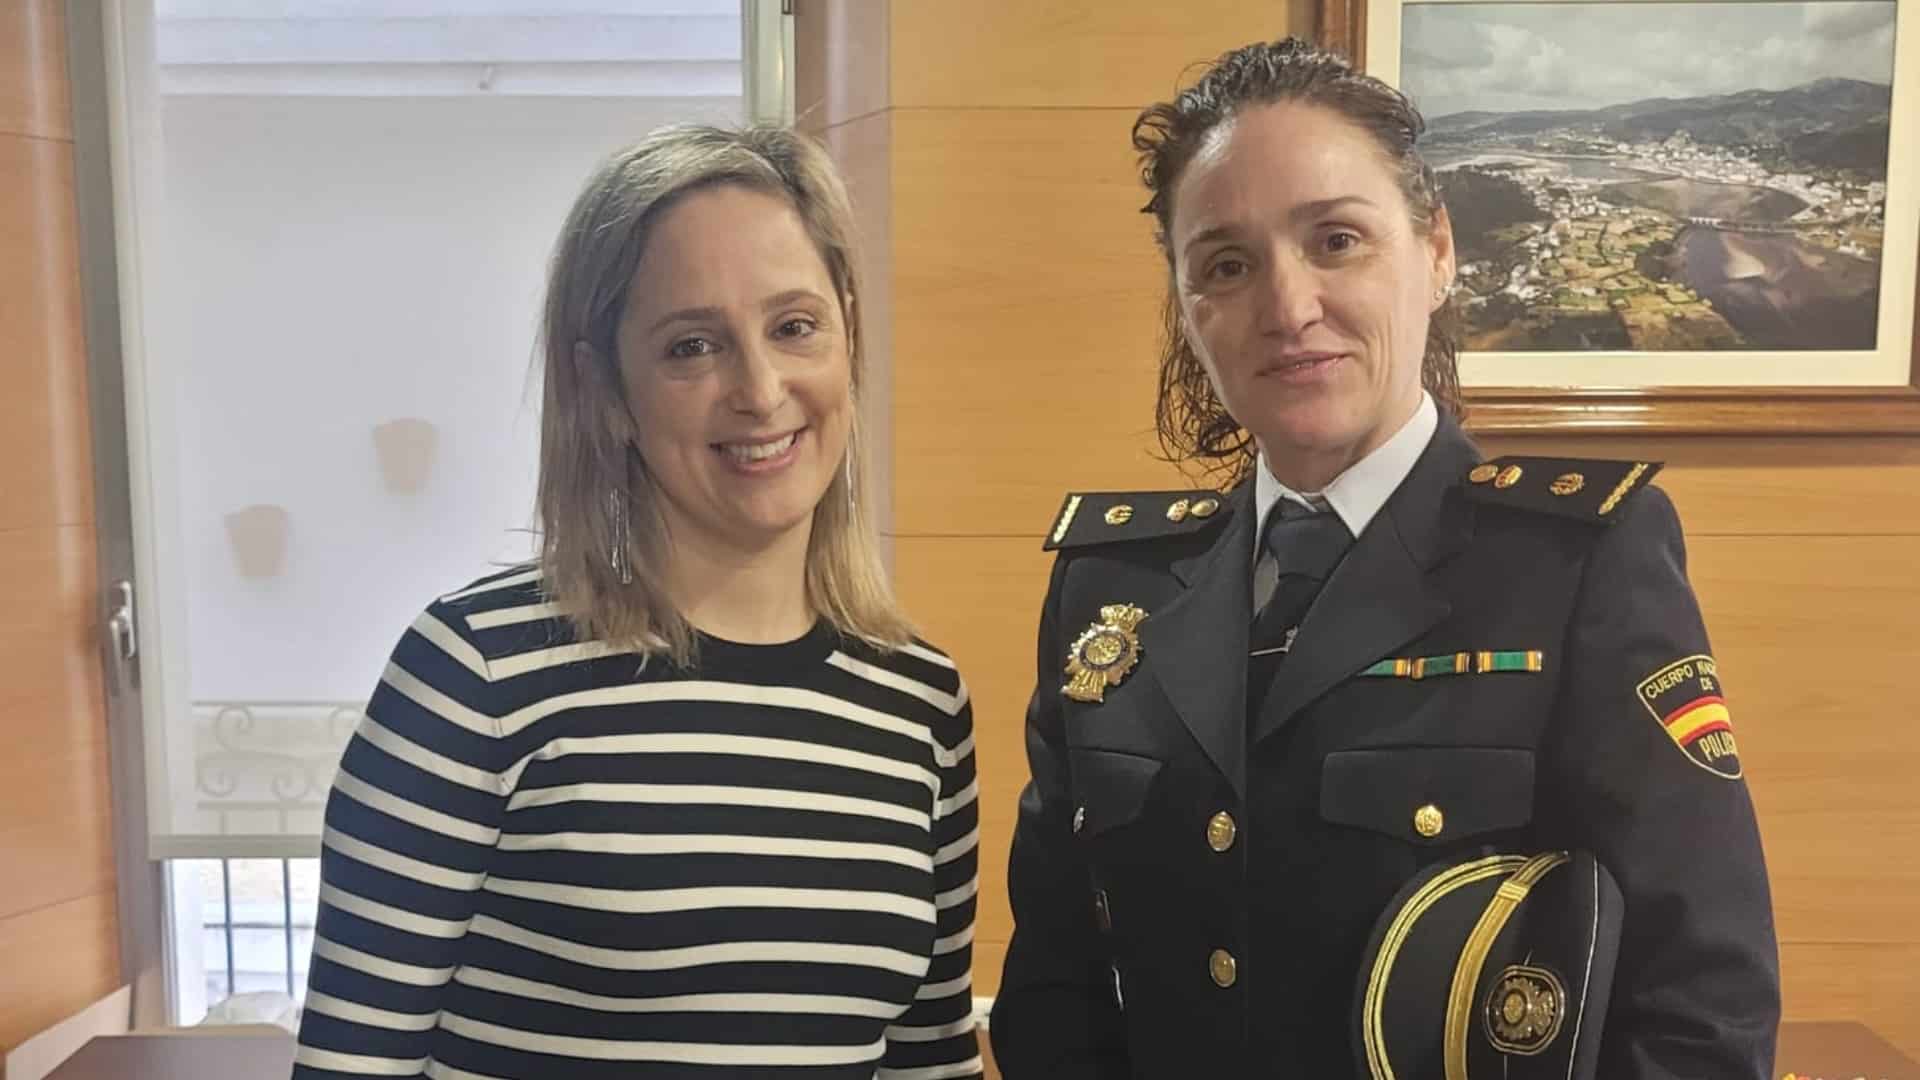 La alcaldesa de Viveiro, María Loureiro, y la inspectora jefe de la Policía Nacional en Viveiro, María Begoña Caínzos | CONCELLO DE VIVEIRO